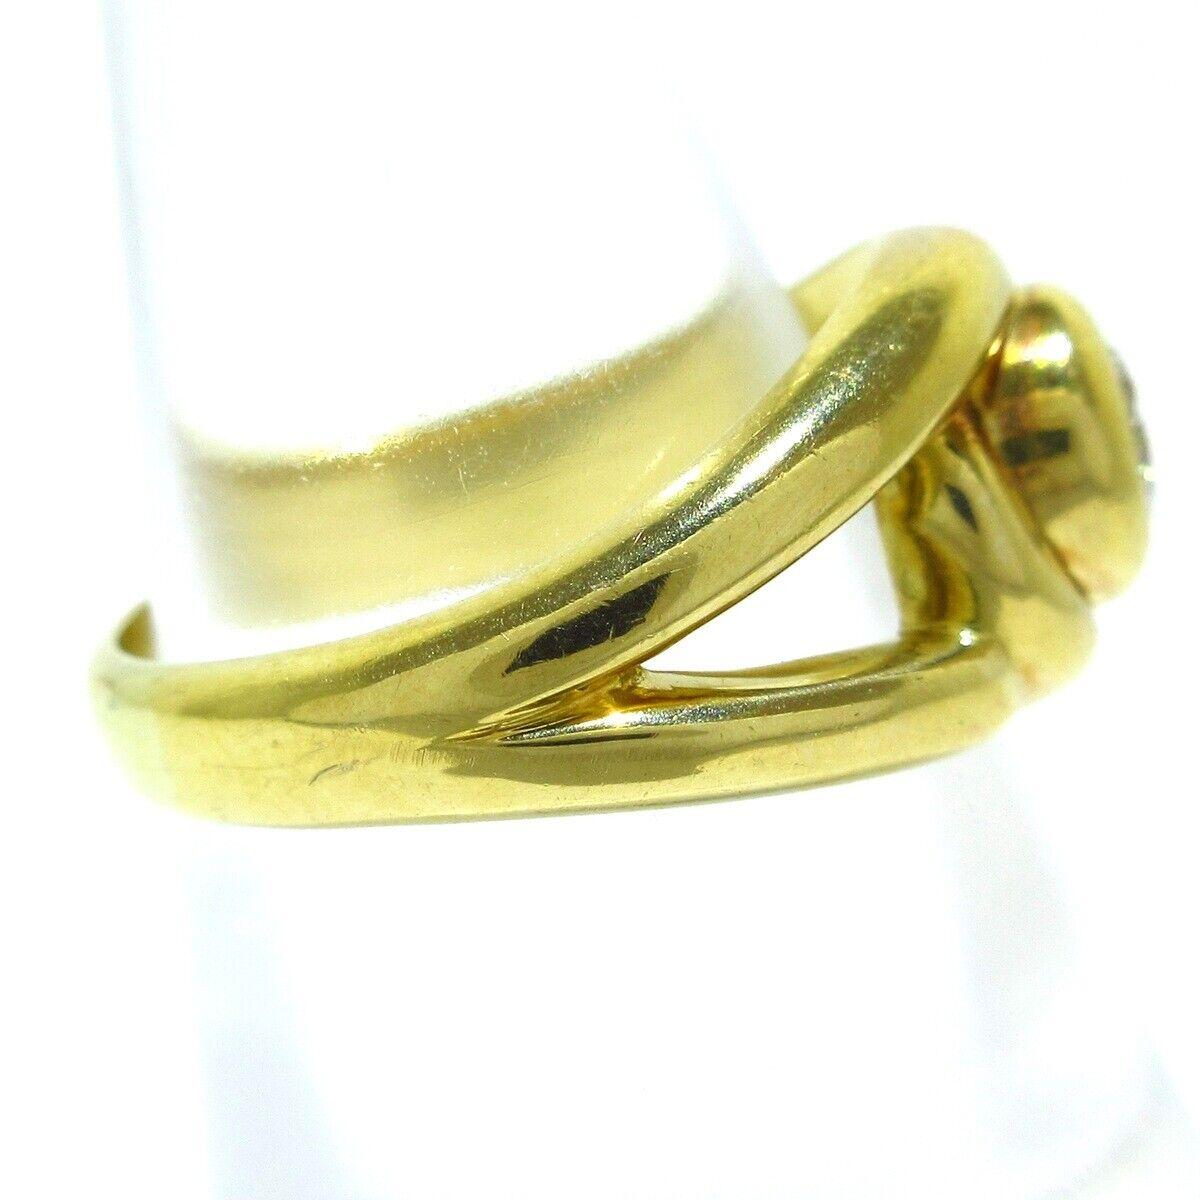 Cartier 18k Gelbgold & Diamond Solitaire Ring Vintage CIRCA 1970er Jahre europäischen gemacht


Hier haben Sie die Chance, einen wunderschönen Designring mit hohem Sammlerwert zu erwerben.  Wirklich ein tolles Stück zu einem tollen Preis!